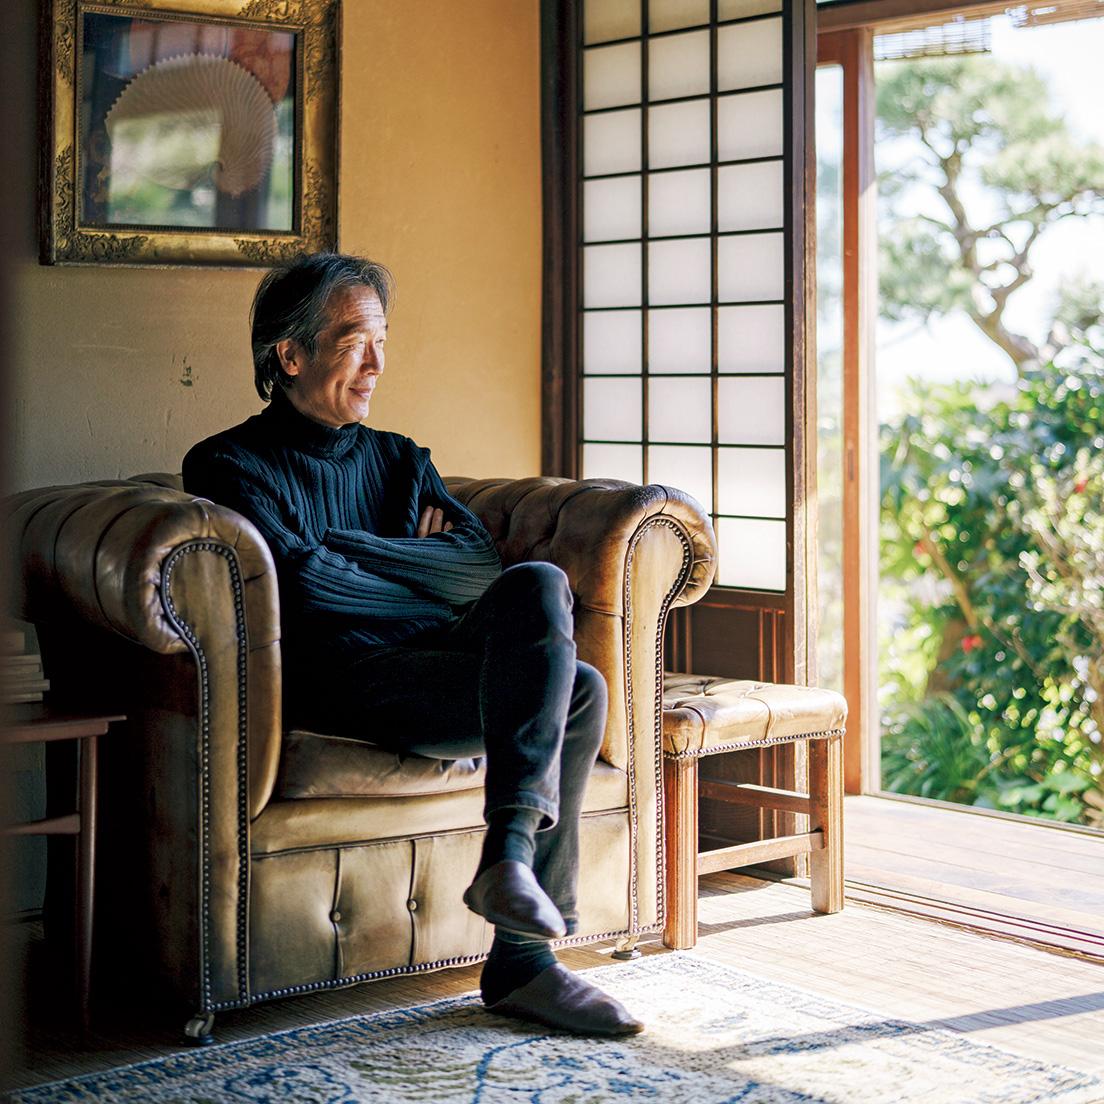 うえだよしひこ　1957年兵庫県生まれ。写真家、多摩美術大学教授。日本写真協会作家賞、東京ADC賞最高賞、ニューヨークADC賞など受賞多数。代表作に『QUINAULT』『AMAGATSU』『at Home』『A Life with Camera』、近著に『林檎の木』『68TH STREET』『椿の庭』などがある。photo_Tetsuya Ito